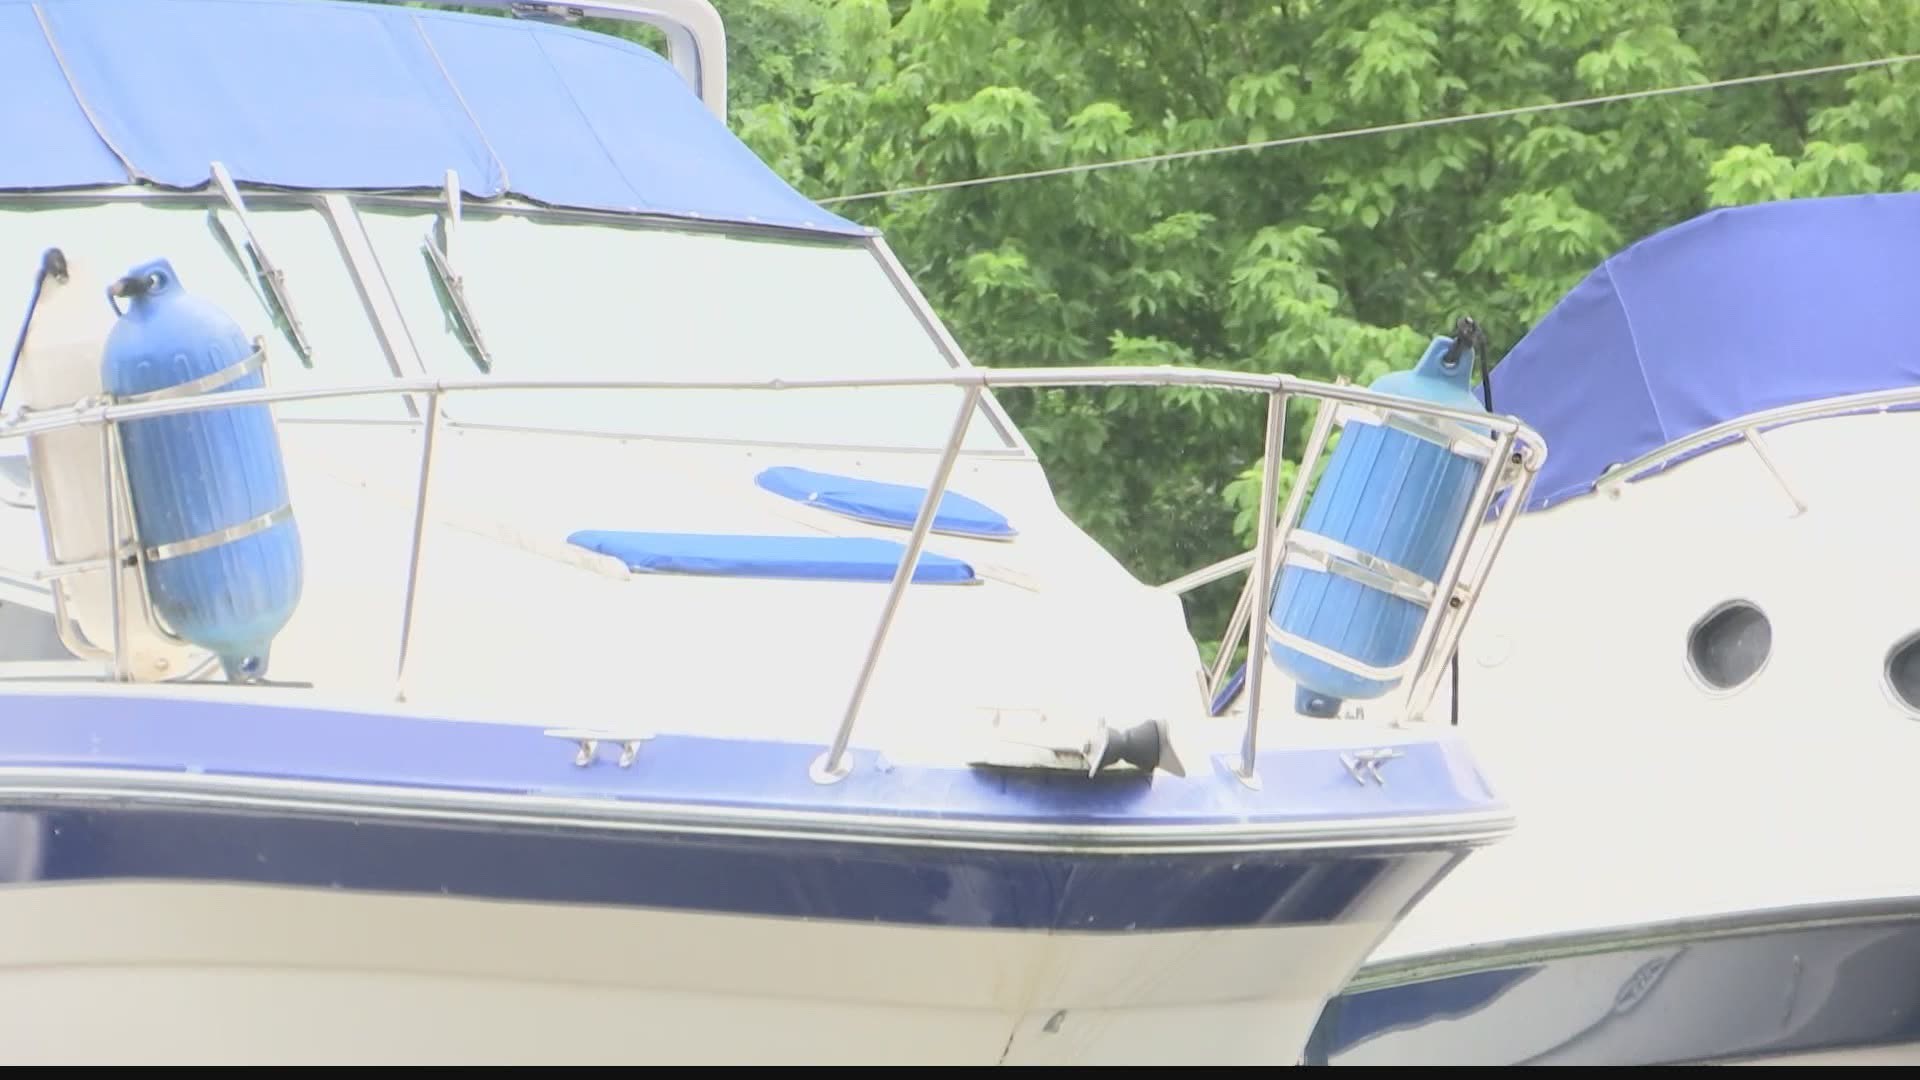 Boat sales surge in Guntersville